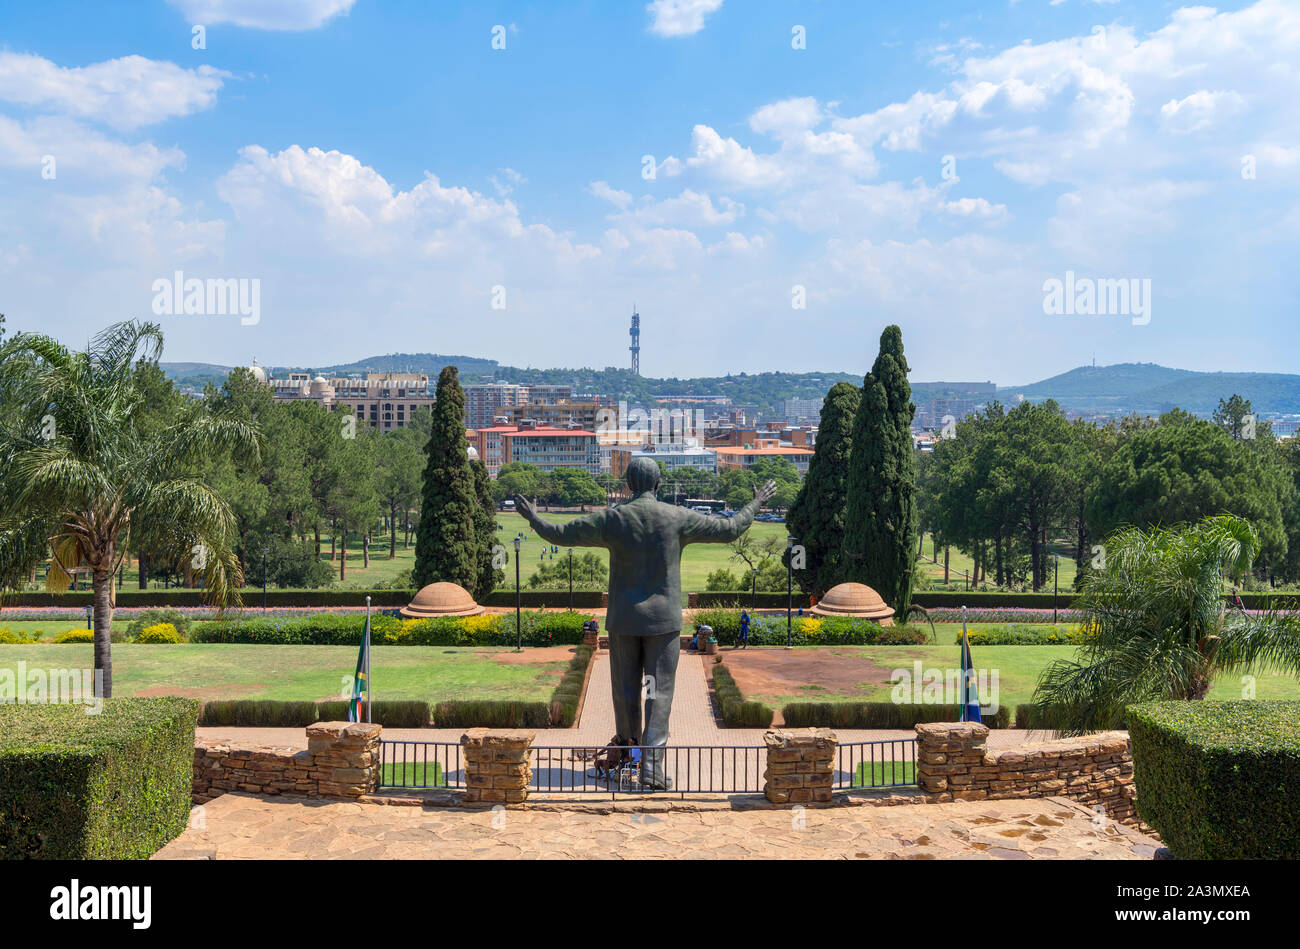 Vista dall'Unione edifici sopra il centro cittadino con la gigantesca statua di Nelson Mandela in primo piano, Pretoria Gauteng, Sud Africa Foto Stock